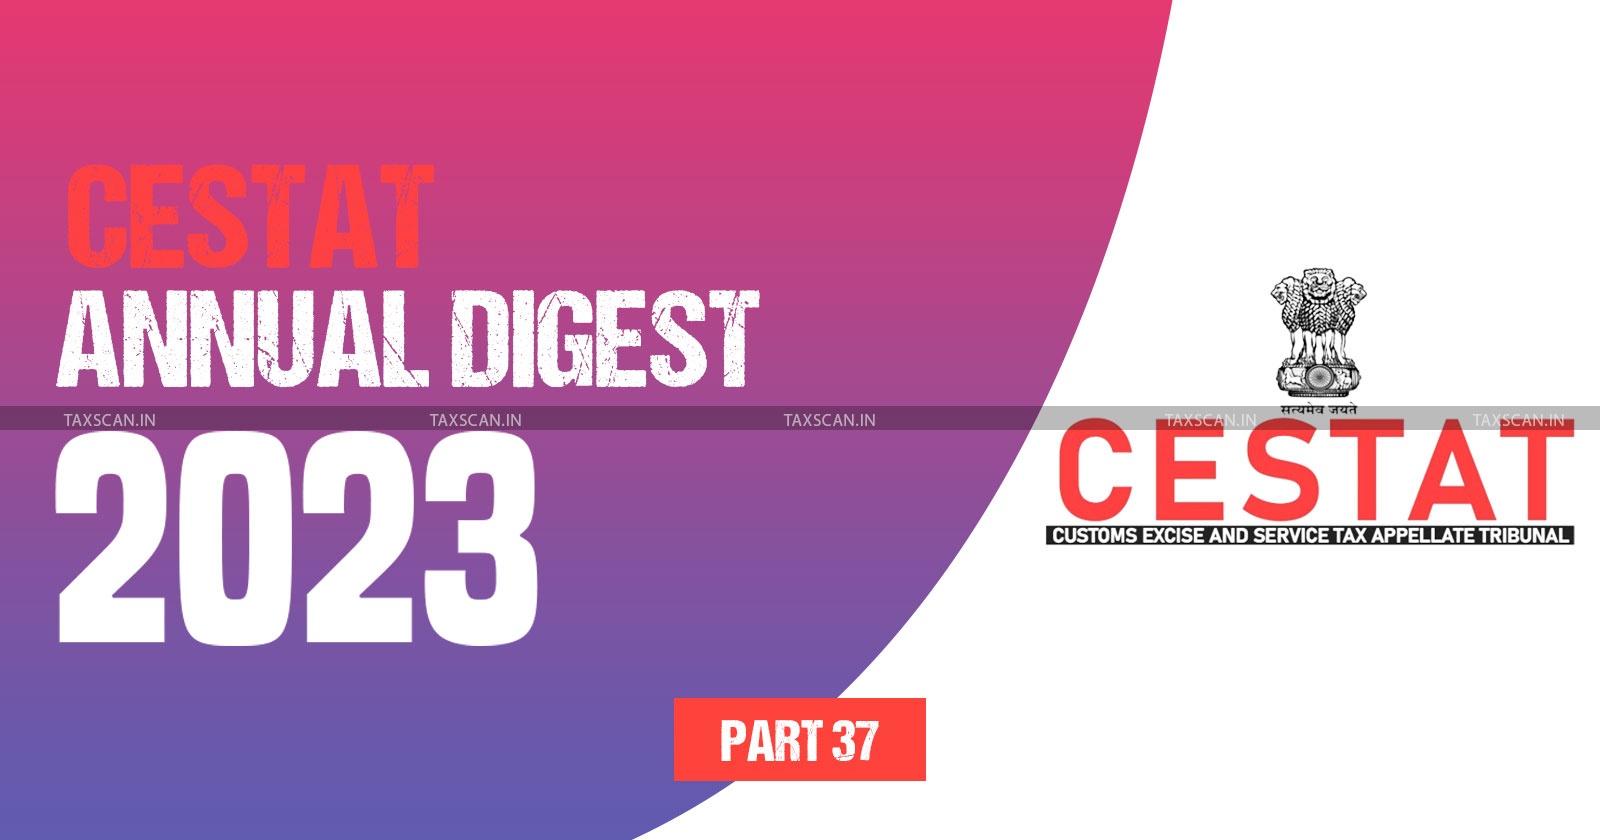 Annual Digest 2023 - CESTAT Annual Digest 2023 - cestat - part37 - TAXSCAN